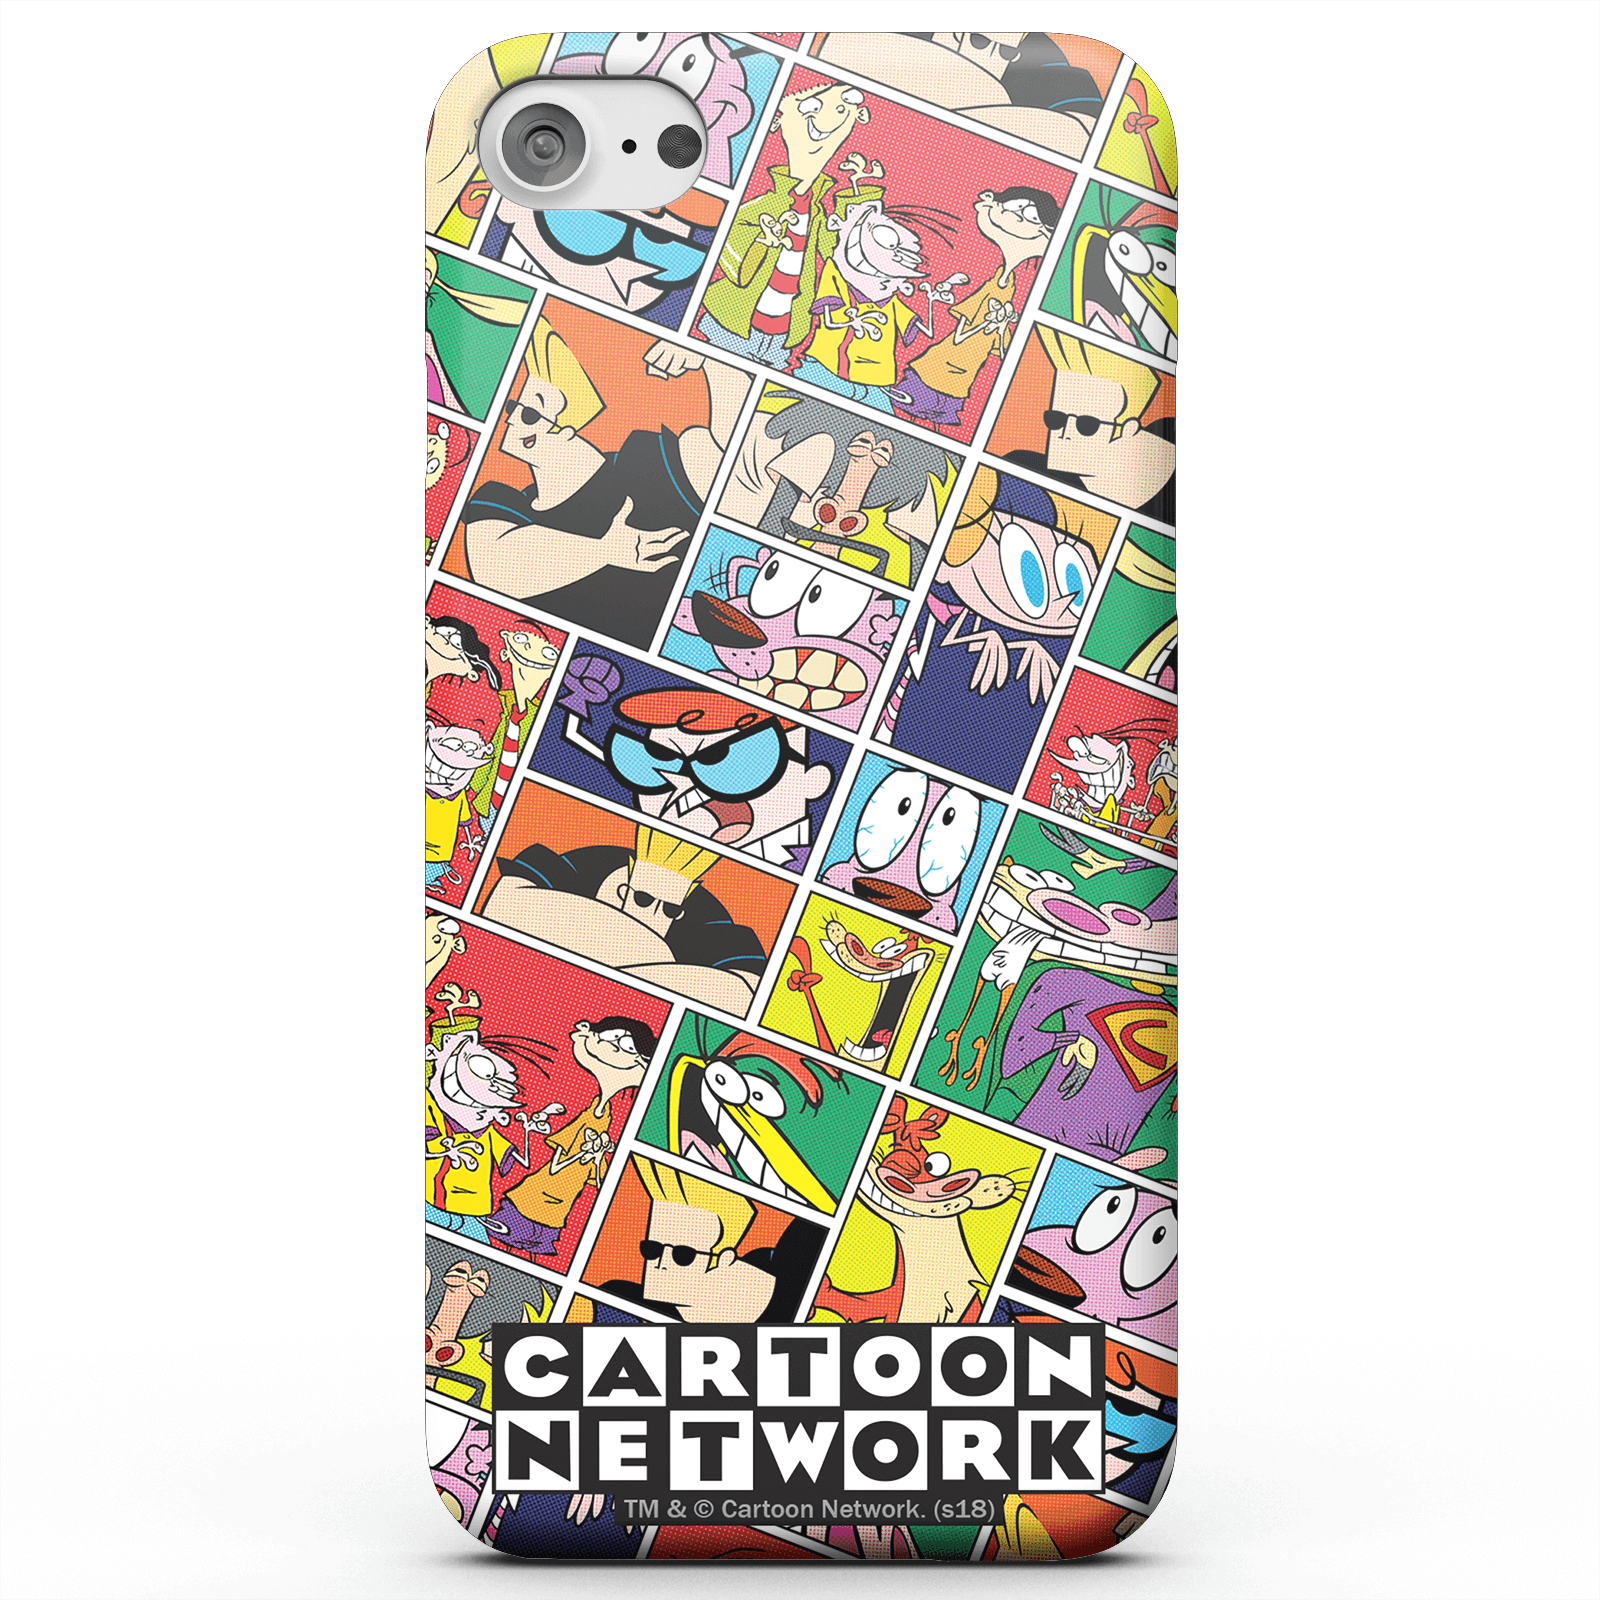 Cartoon Network Cartoon Network Smartphone Hülle für iPhone und Android - iPhone 5C - Snap Hülle Matt